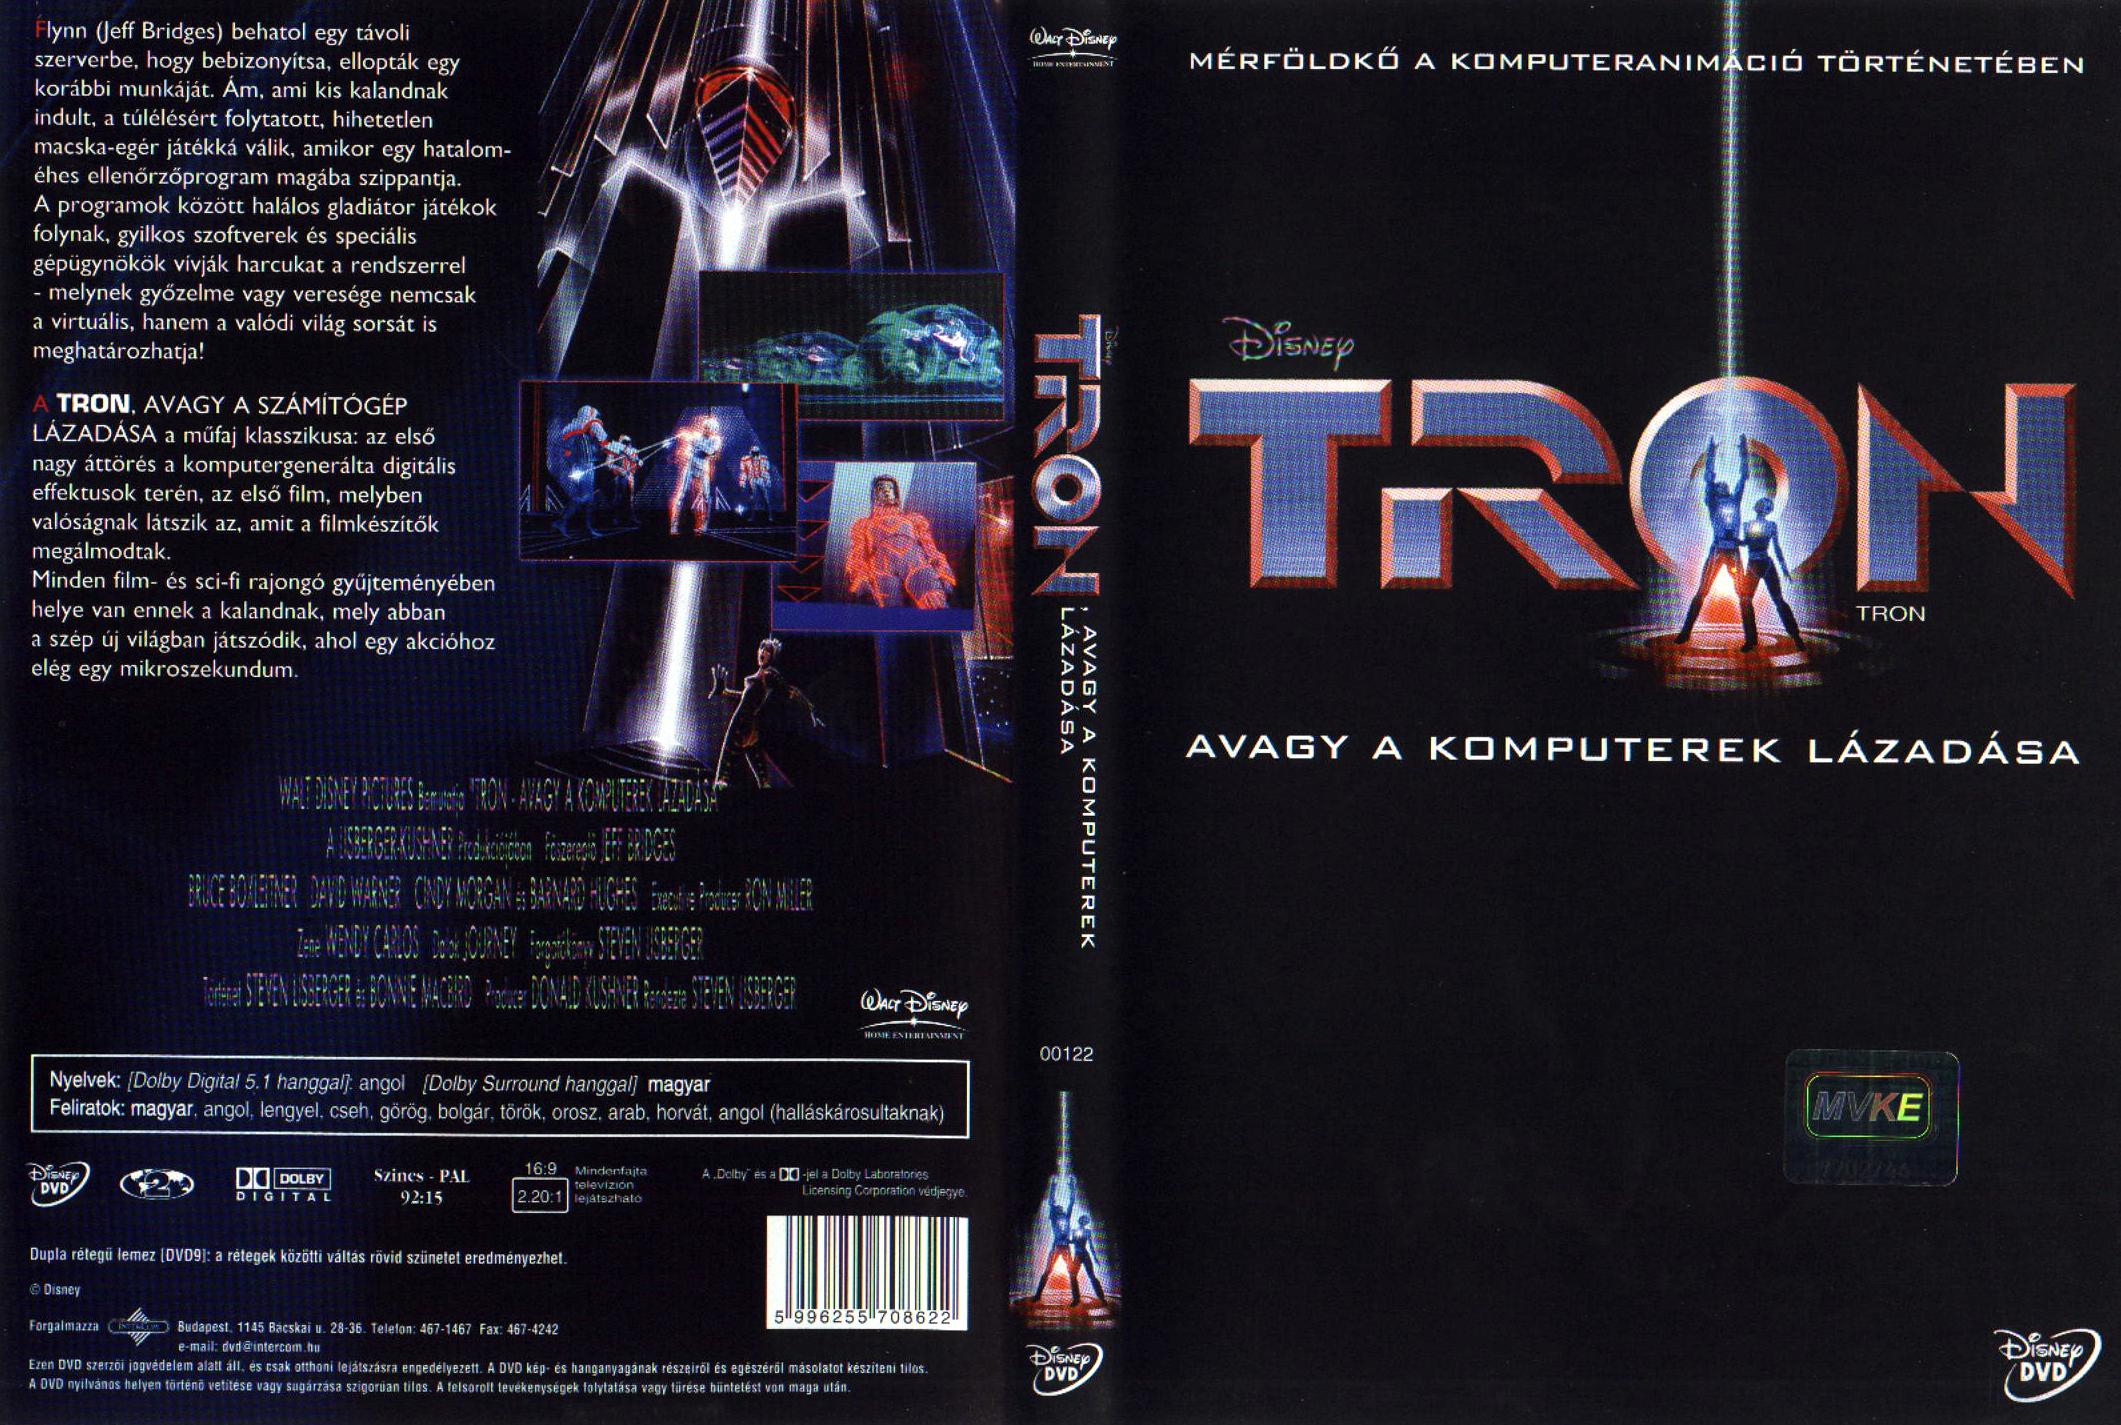 Tron - A komputerek lzadsa